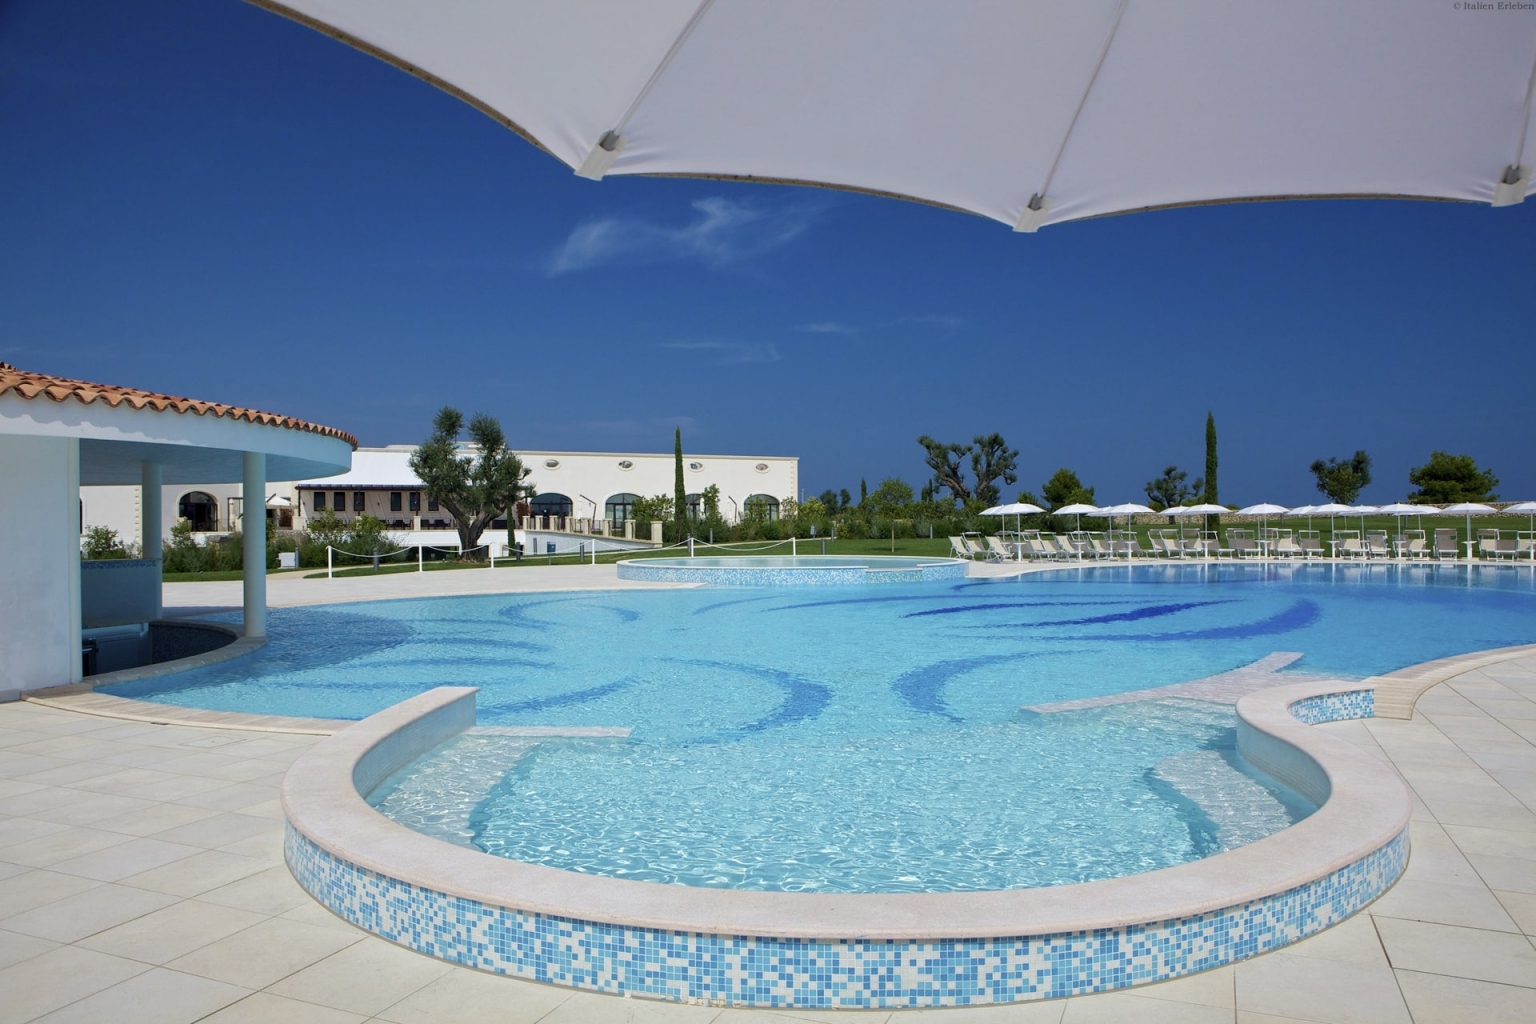 Apulien Golf Resort Acaya Lecce Salento 18 Loch Anlage modern Landschaft Wellness Pool